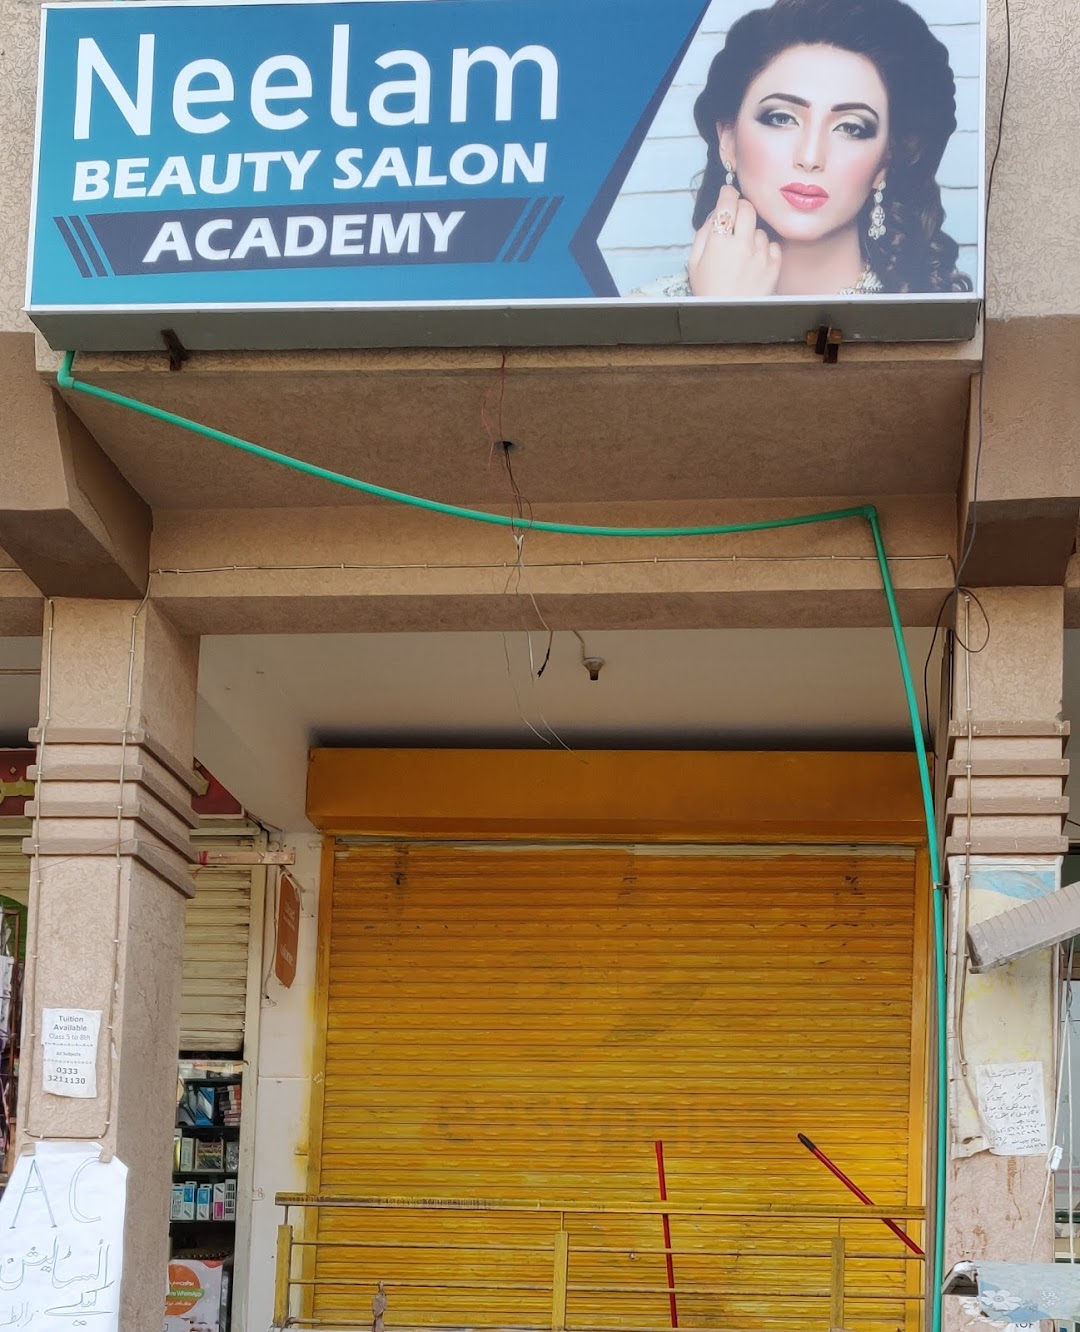 Neelam Beauty Salon Academy